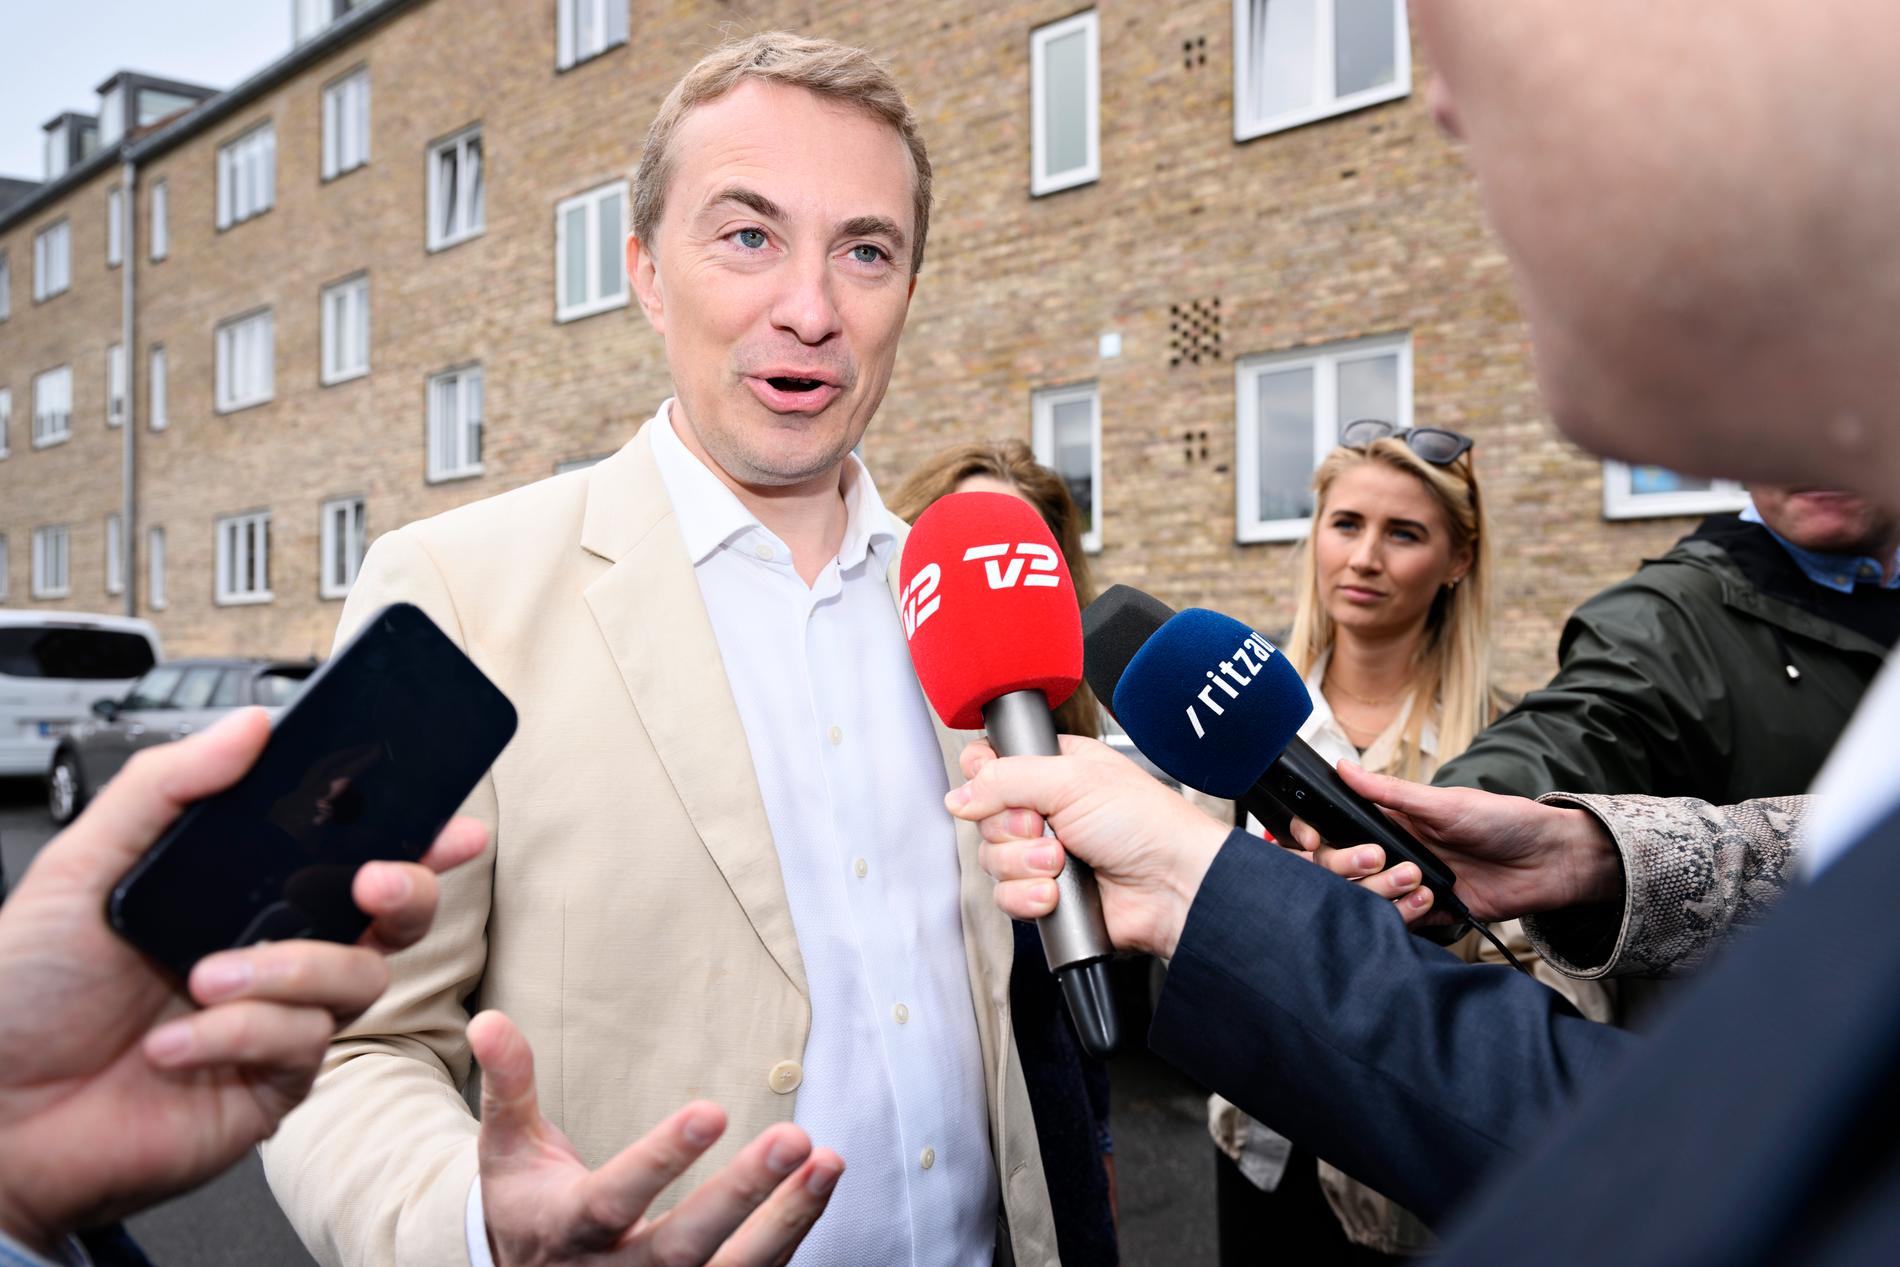 Dansk folkepartis ledare Morten Messerschmidt får se ytterligare folketingsmedlemmar lämna partiet. Bild från tidigare i juni.